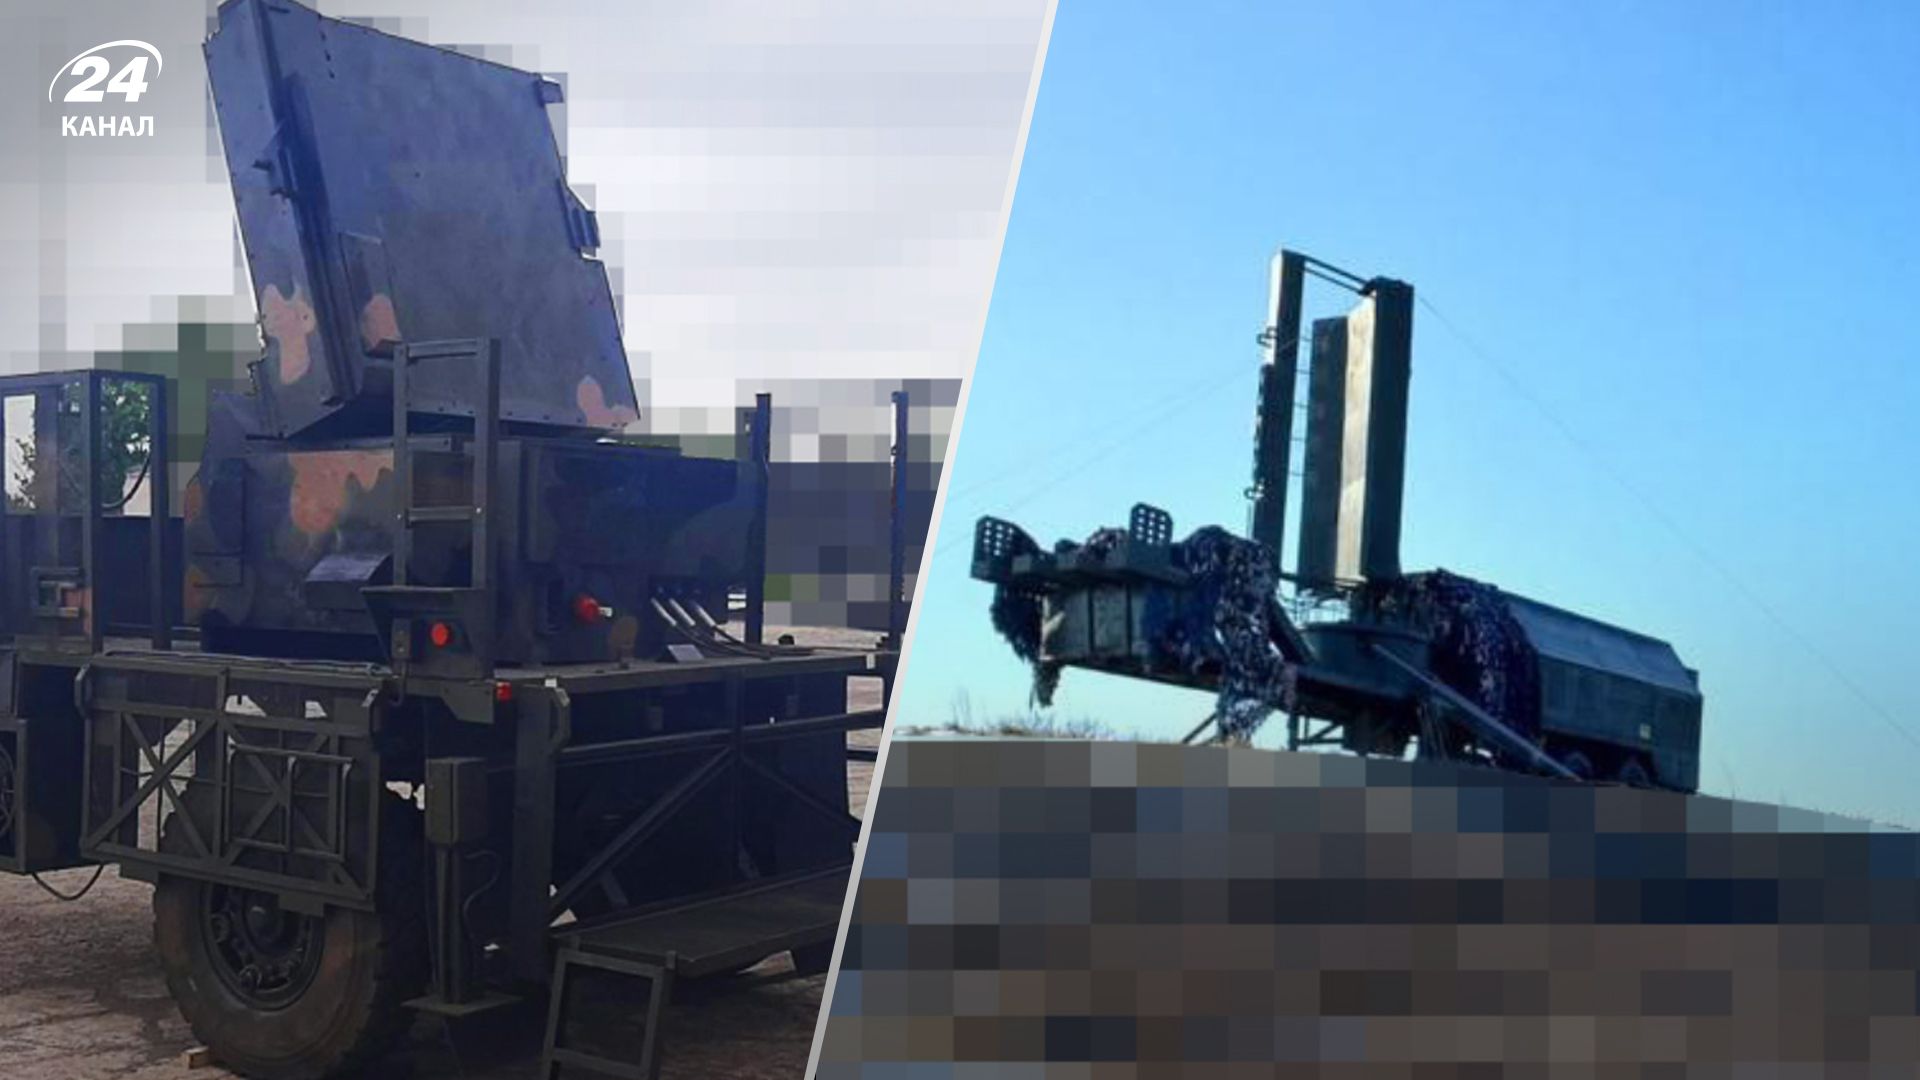 Артиллерия и радары: Метинвест запустил серийное производство макетов военной техники для ВСУ